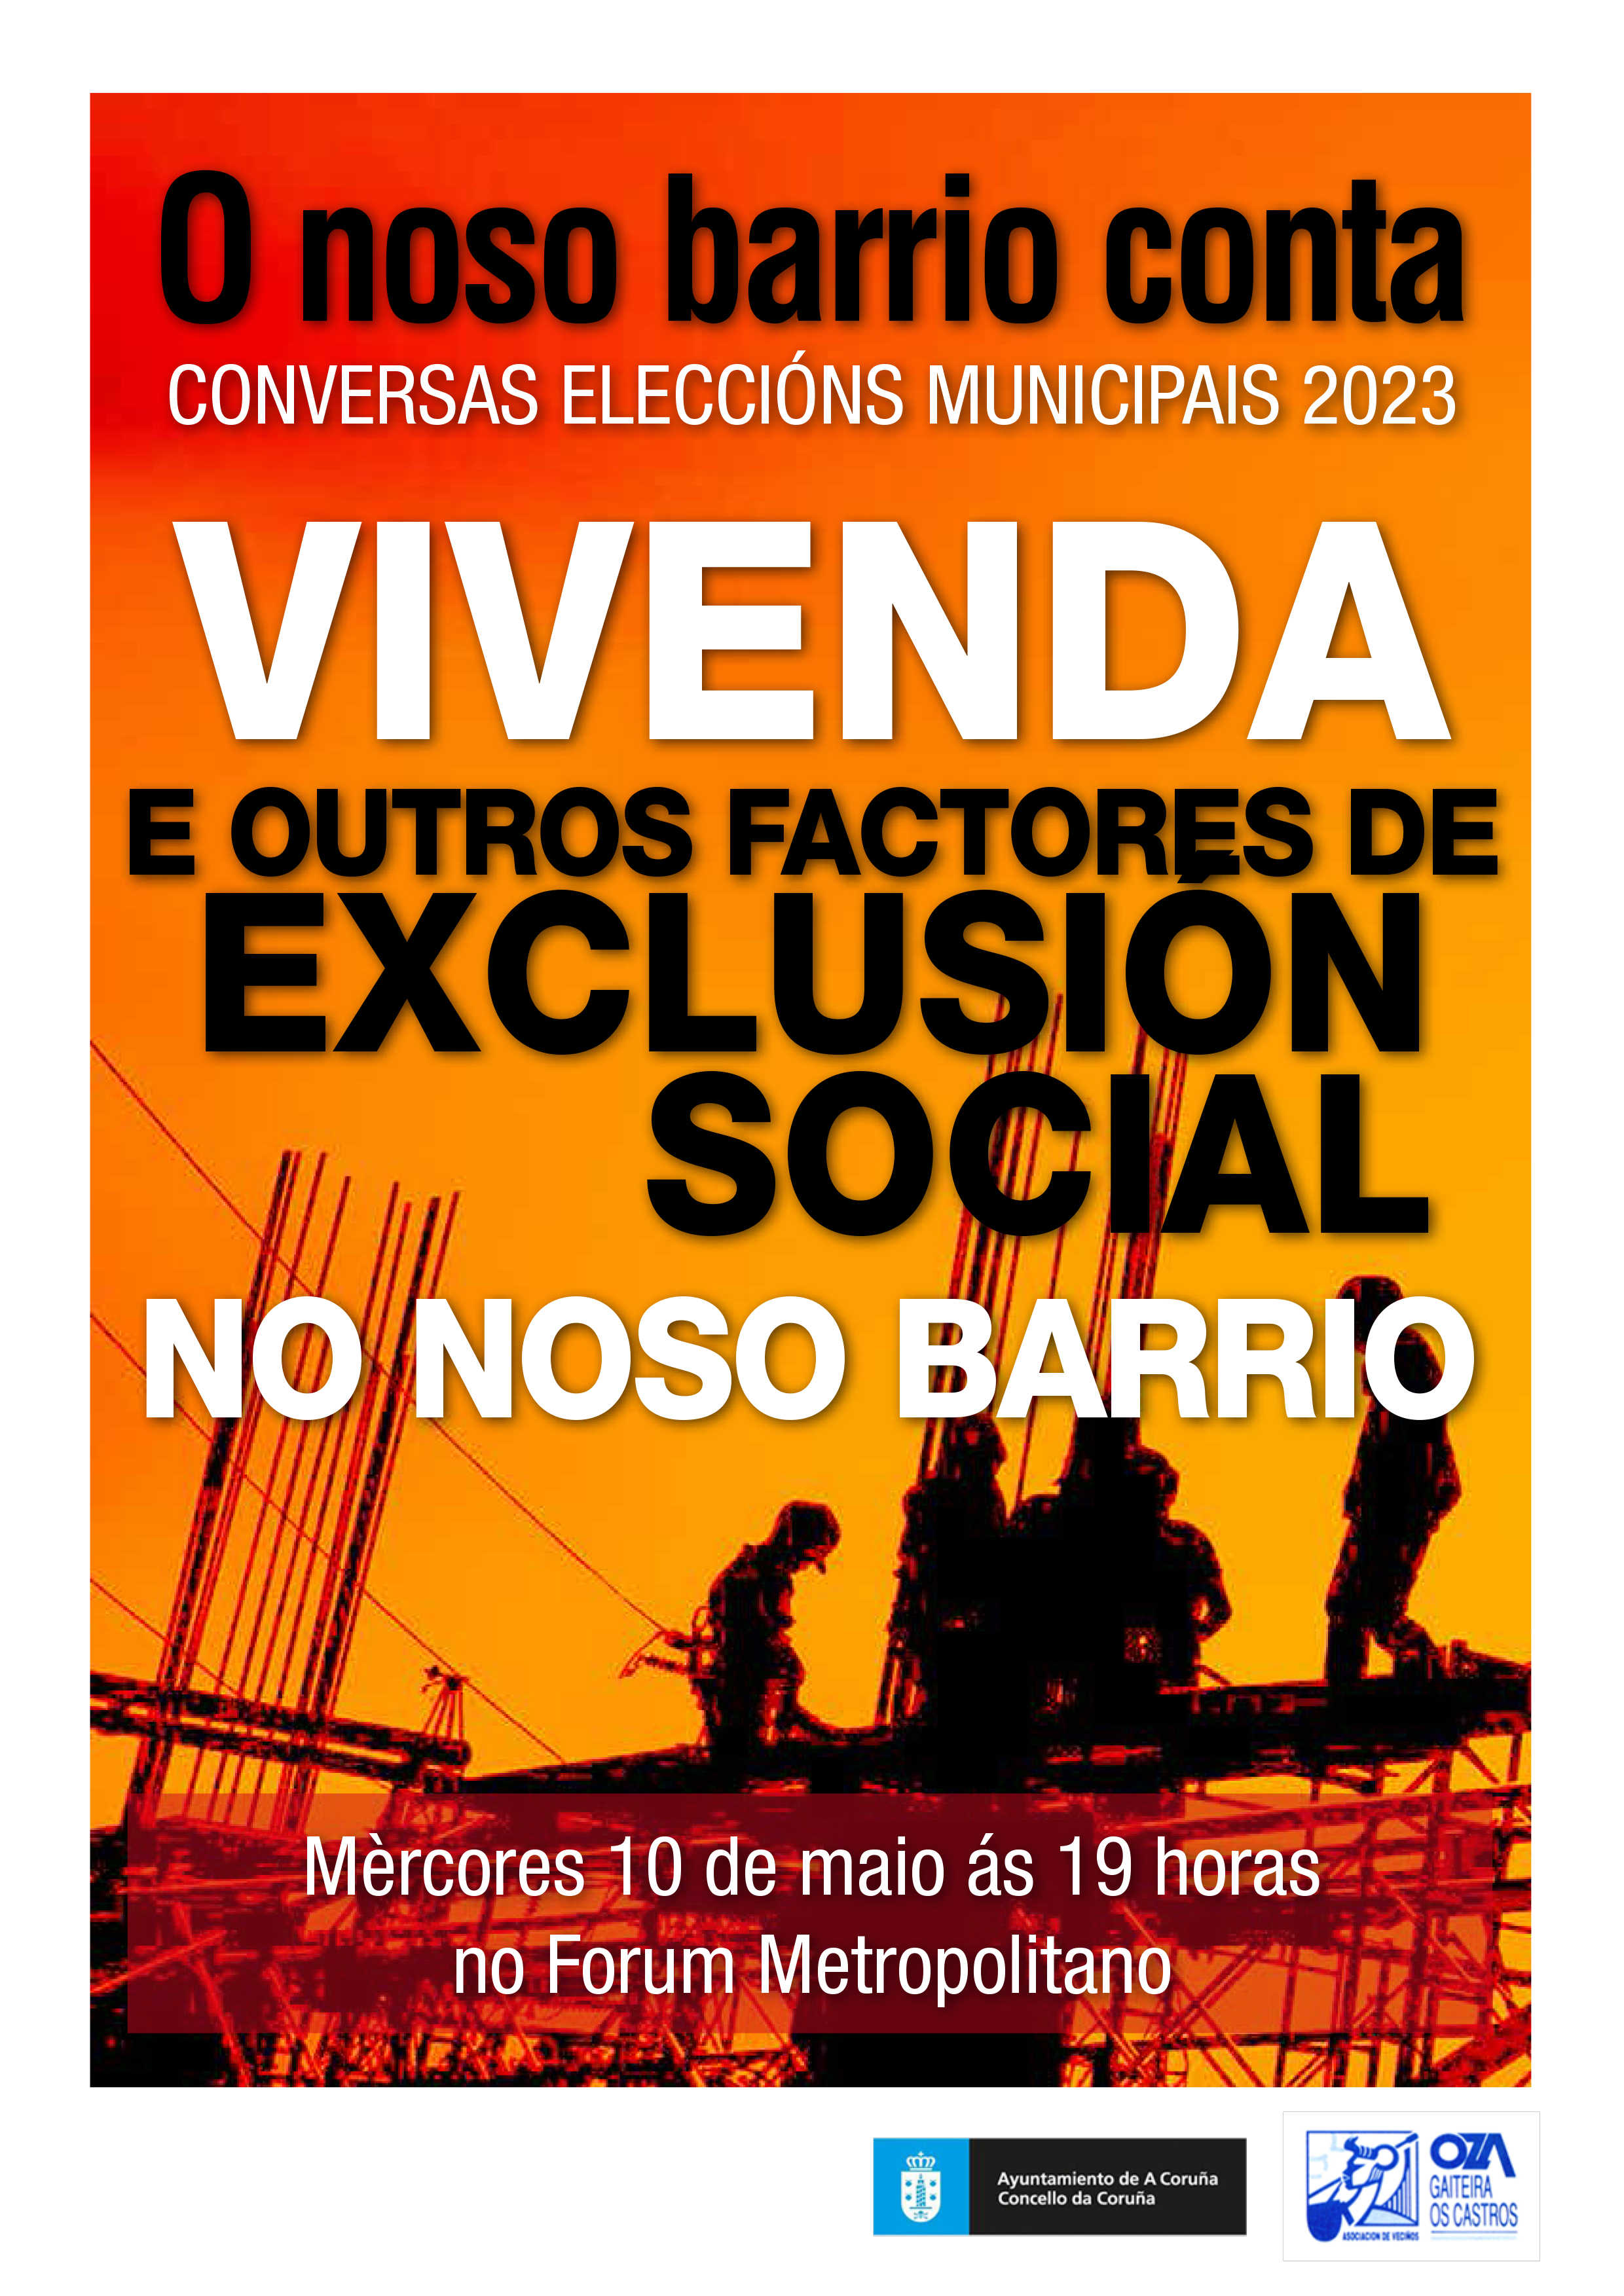 O NOSO BARRIO CONTA - CONVERSAS ELECCIÓNS MUNICIPAIS 2023